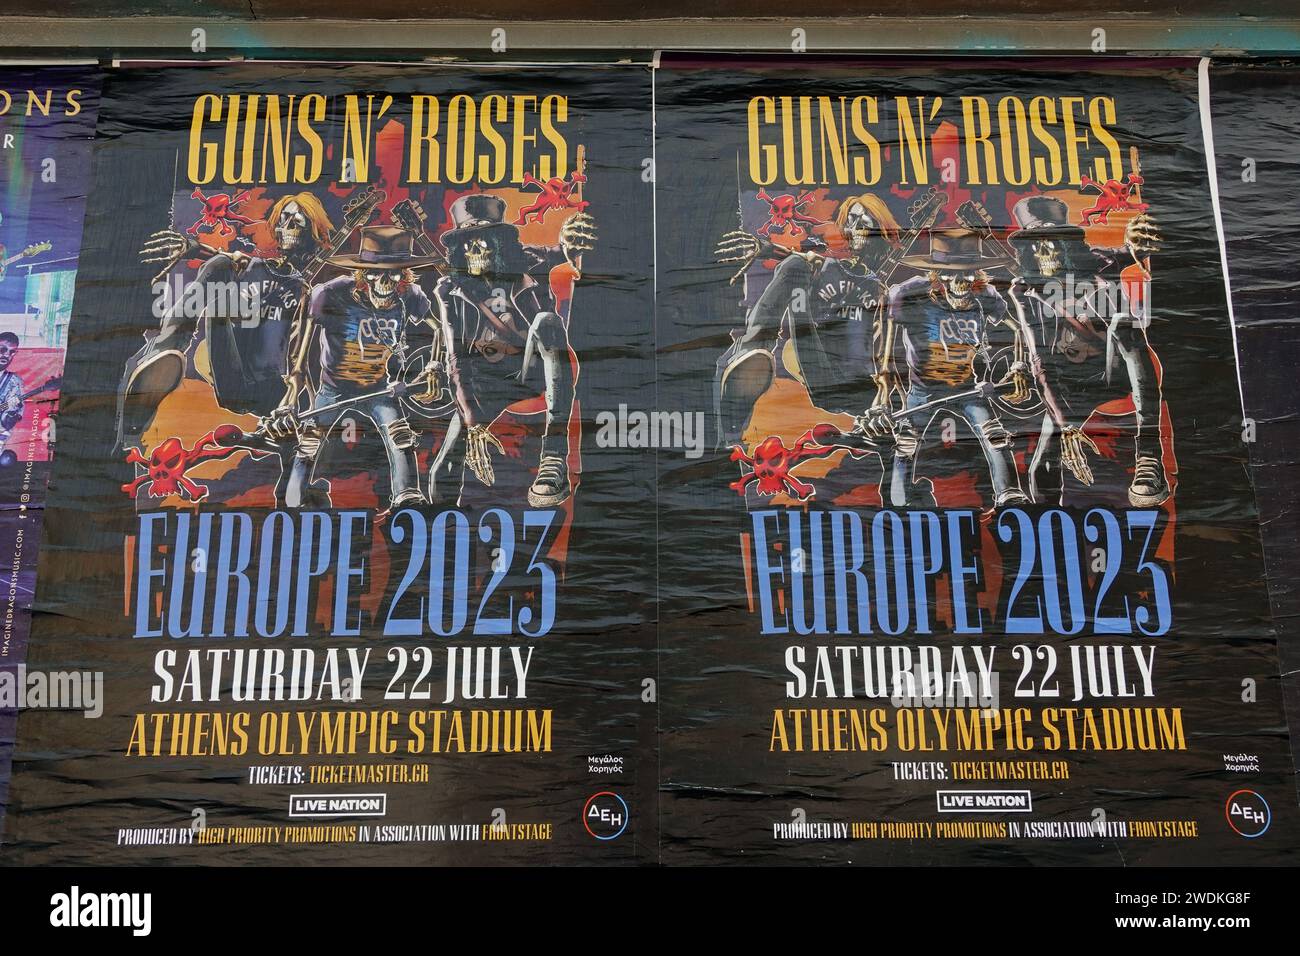 Atene, Grecia - 20 giugno 2023: Poster dei concerti di musica hard rock sui Guns N' Roses sulle mura della città. Foto Stock